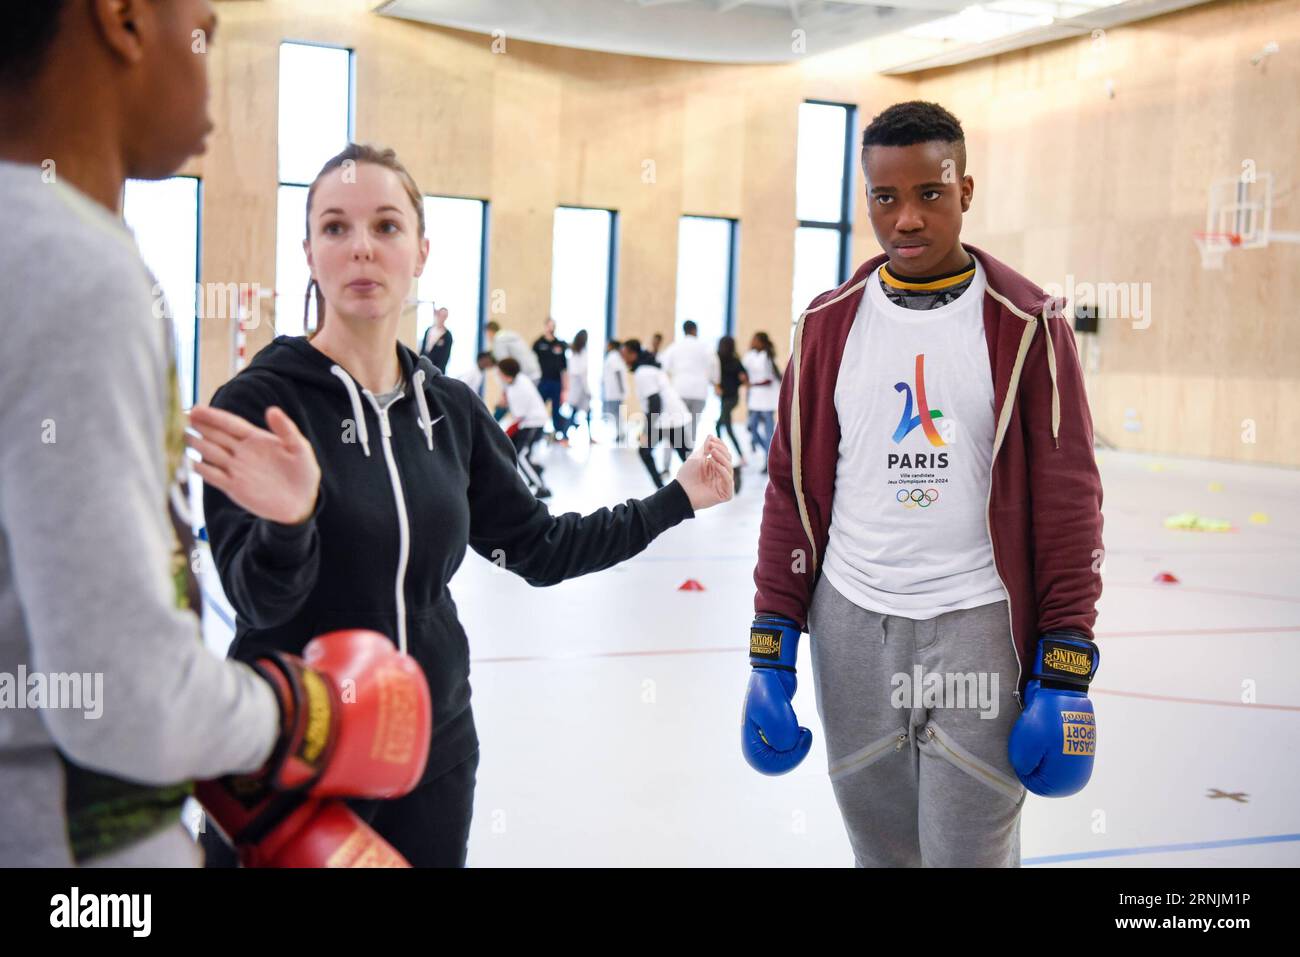 (170203) -- SEINE-SAINT-DENIS, le 3 février 2017 -- des élèves suivent un cours de boxe à l'école secondaire Dora Maar de Seine-Saint-Denis, au nord-est de Paris, France, le 3 février 2017. Paris a lancé une série d'activités visant à promouvoir la candidature de Paris pour accueillir les Jeux Olympiques de 2024. ) (SP)FRANCE-PARIS-2024 CANDIDATURE AUX JEUX OLYMPIQUES ChenxYichen PUBLICATIONxNOTxINxCHN ses élèves de Saint Denis février 3 2017 prennent un cours de boxe À l'école secondaire Dora Maar dans son Saint Denis Nord-est de Paris France LE 3 2017 février Paris a lancé une série d'activités pour promouvoir LA CANDIDATURE DE Paris pour accueillir les Jeux Olympiques de 2024 SP France P Banque D'Images